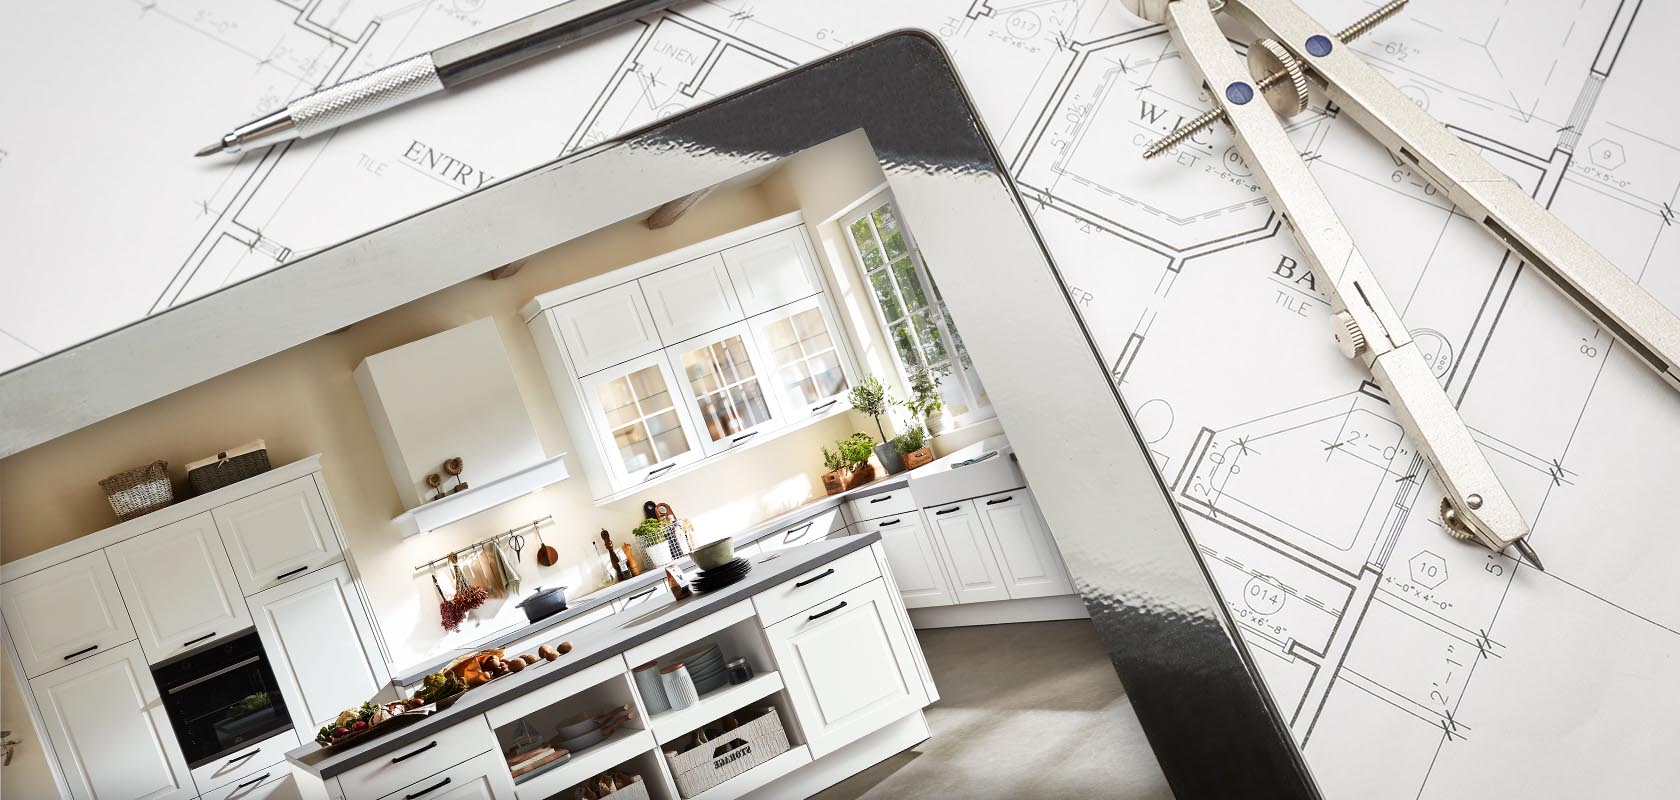 Übergang von den Bauplänen zu einer stilvollen, modernen Küche mit weißen Schränken, die die Transformation vom Design bis zur Fertigstellung bei der Renovierung eines Hauses zeigt.